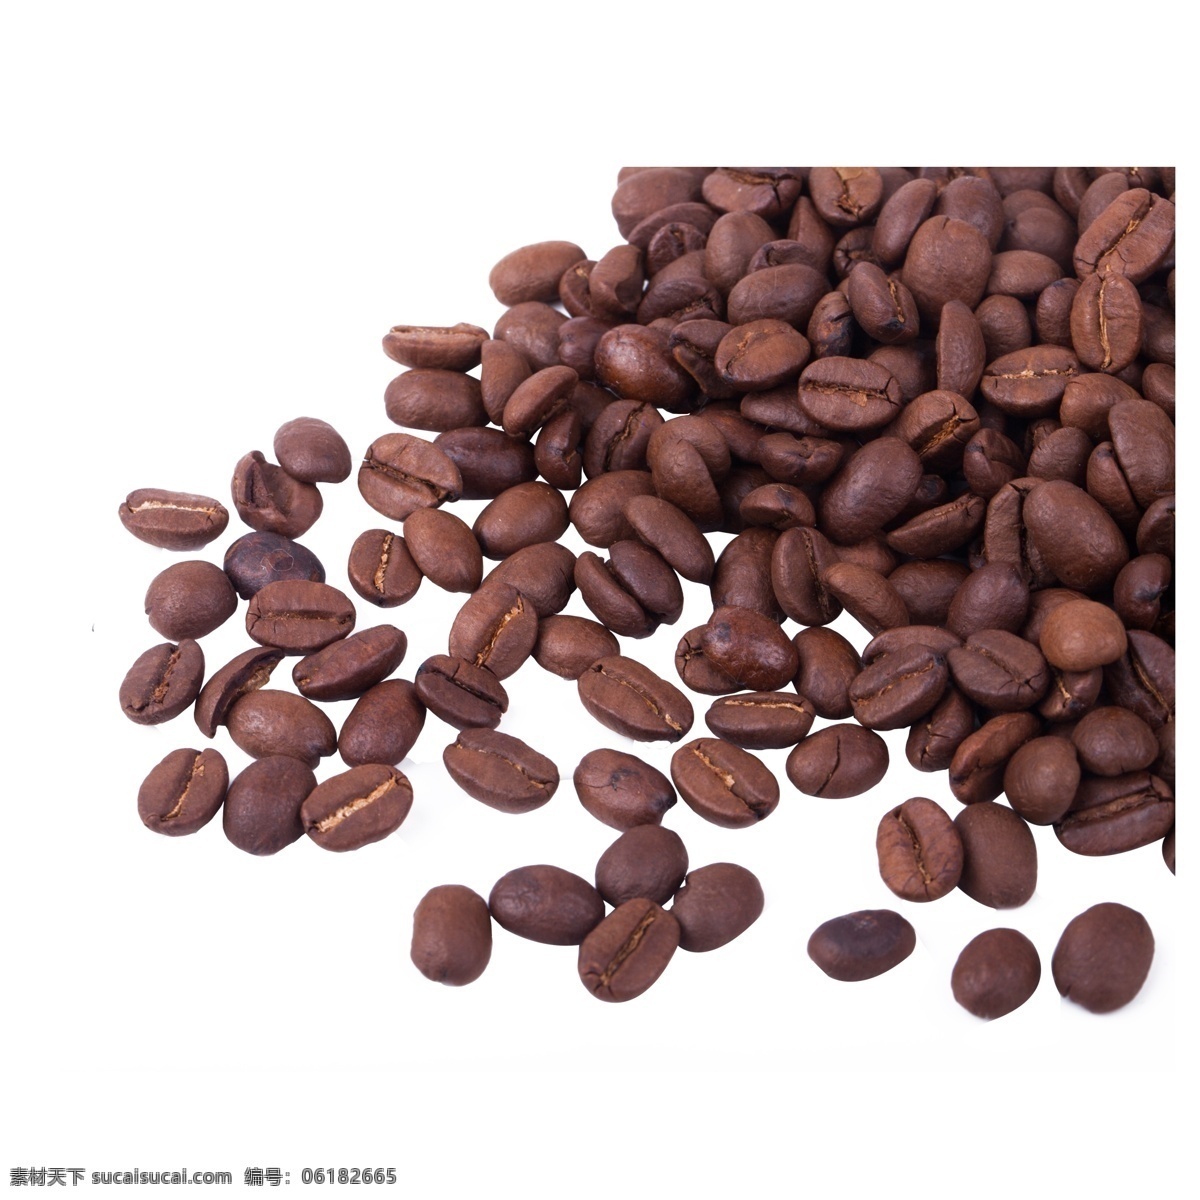 实拍 咖啡 原料 咖啡豆 黑色 种植 五谷 谷物 休闲咖啡豆 实拍咖啡豆 豆子